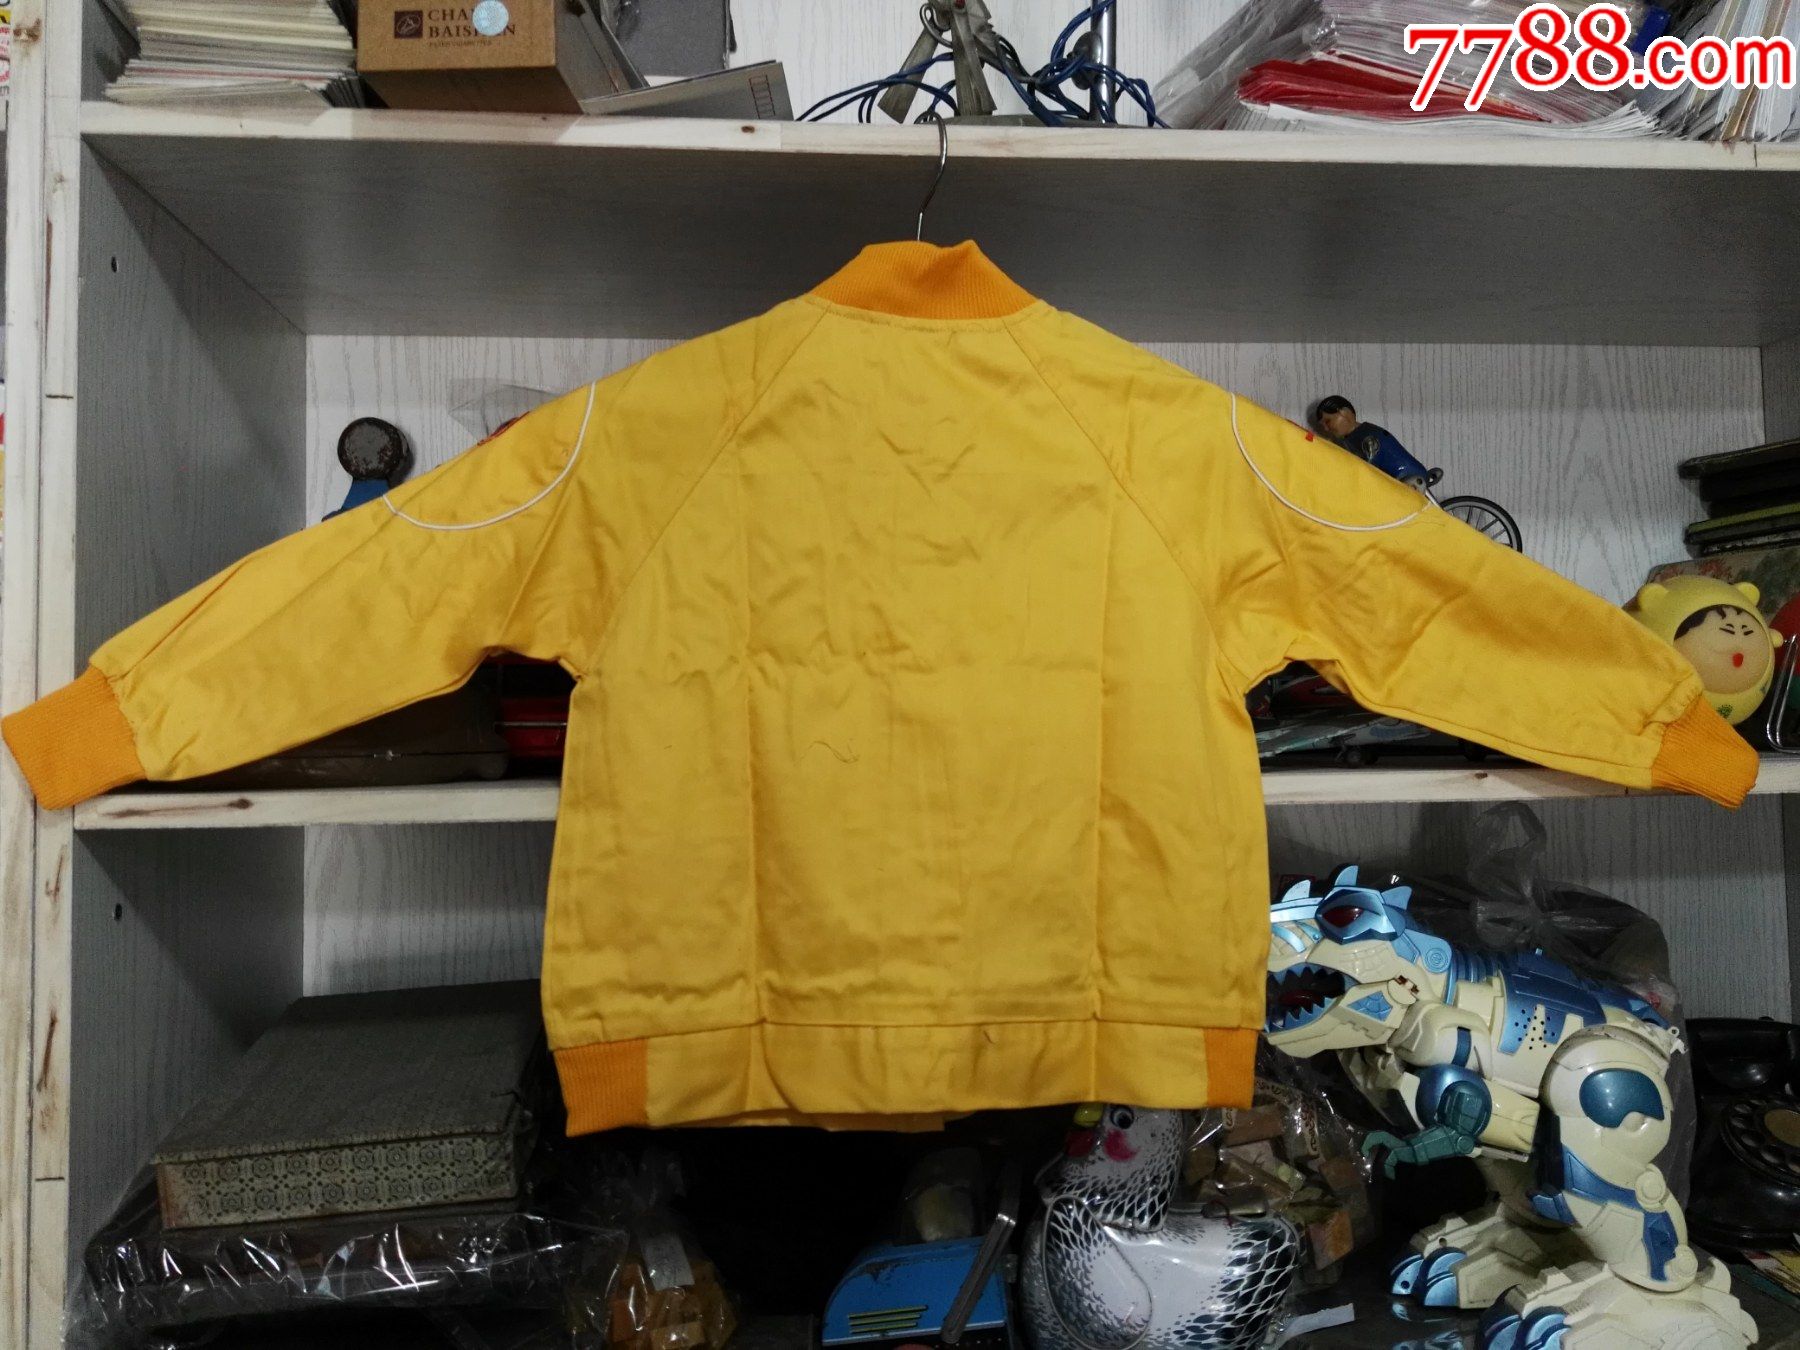 90年代铁道部第十九局一处服装厂制新式黄色童装10套,10元1套,售100元